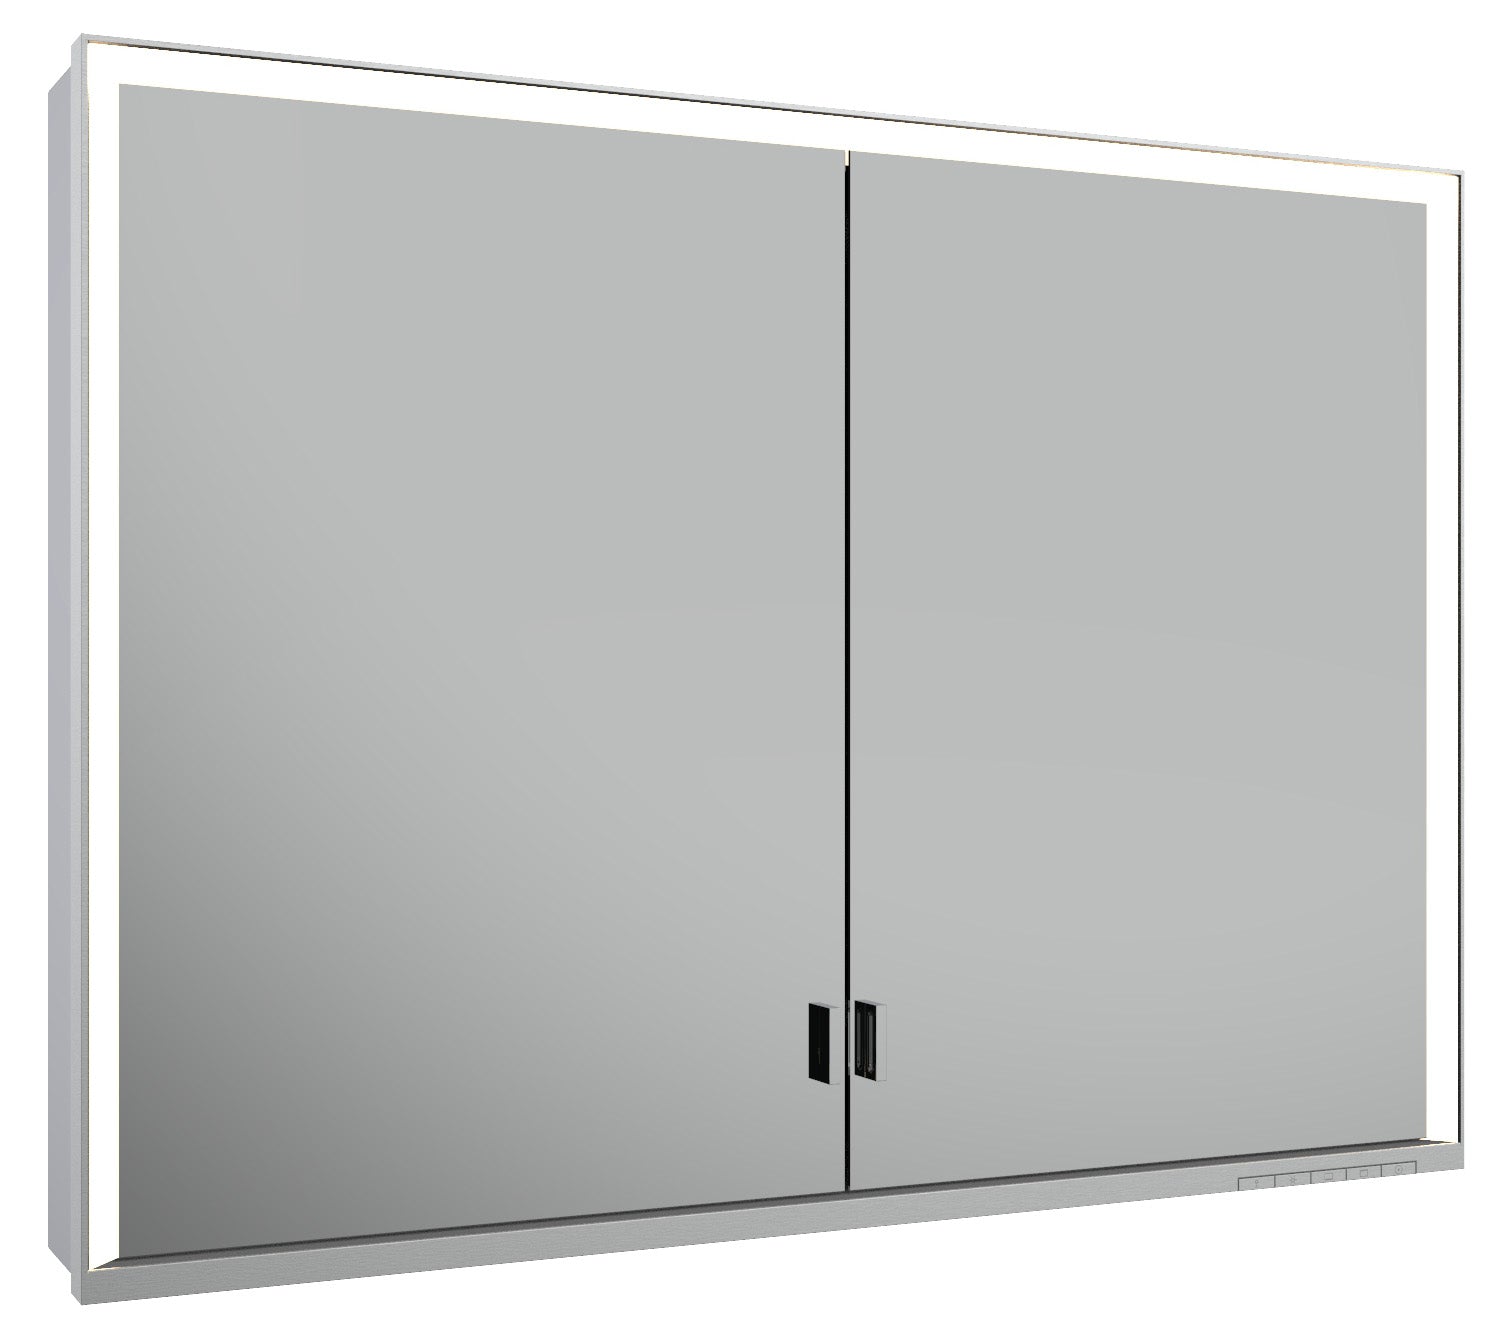 aluminum mirror cabinet